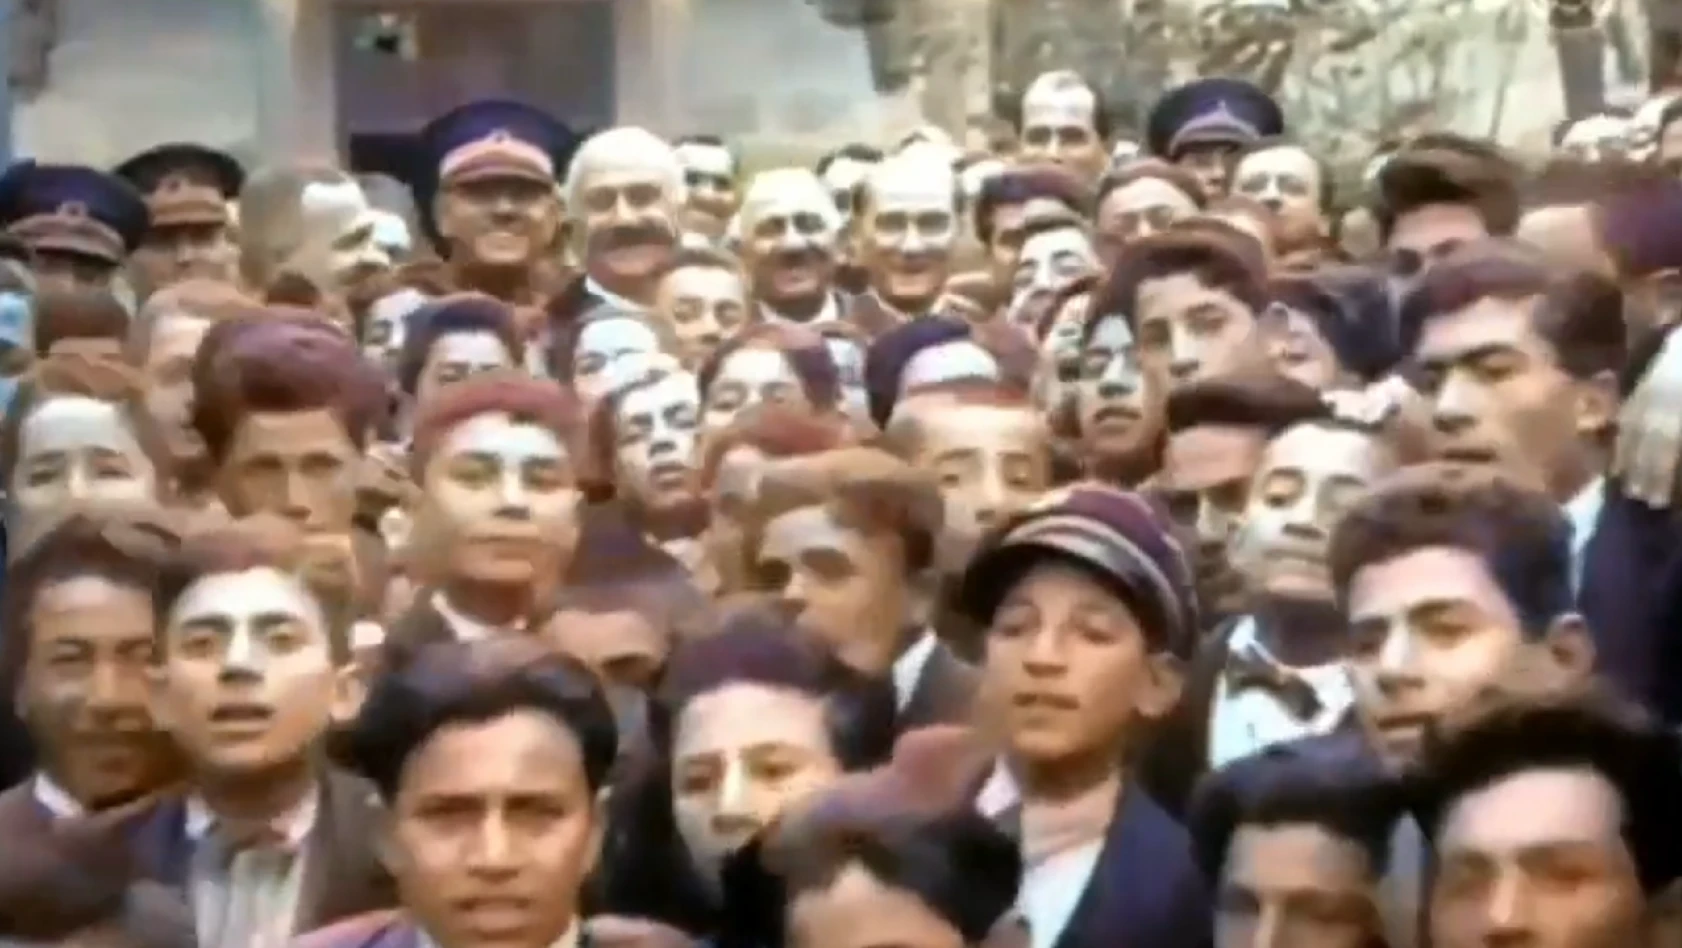 Belki de daha önce hiç görmediniz! İşte Atatürk'ün Kayseri Lisesi'ndeki görüntüleri...